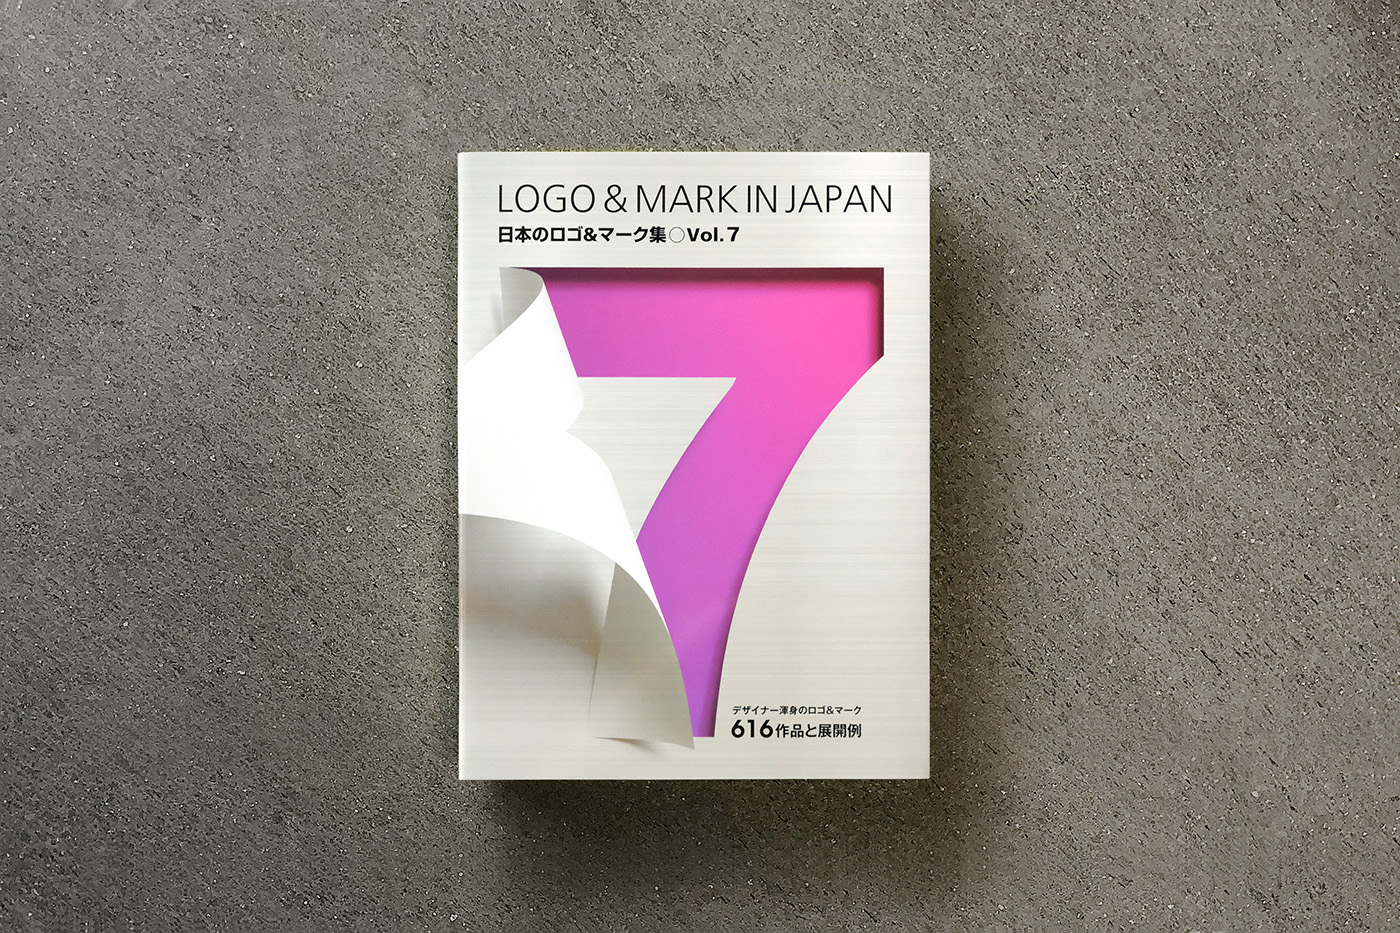 日本のロゴ&マーク集vol.7掲載